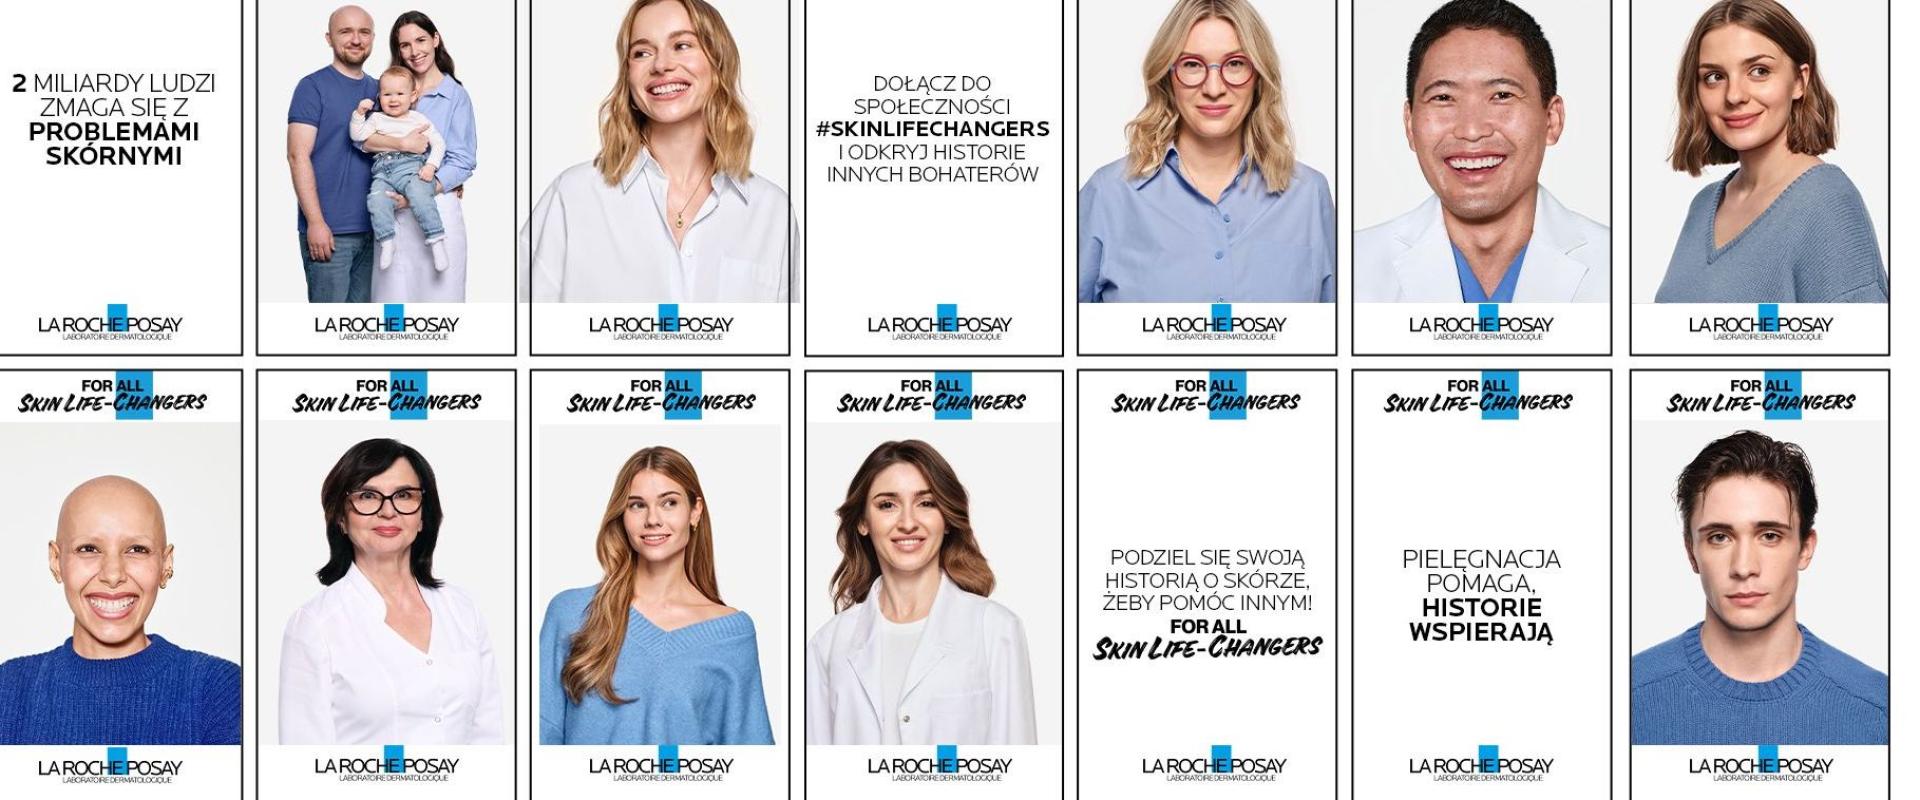 Marka La Roche-Posay oddaje głos konsumentom w ramach kampanii For all Skin Life-Changers